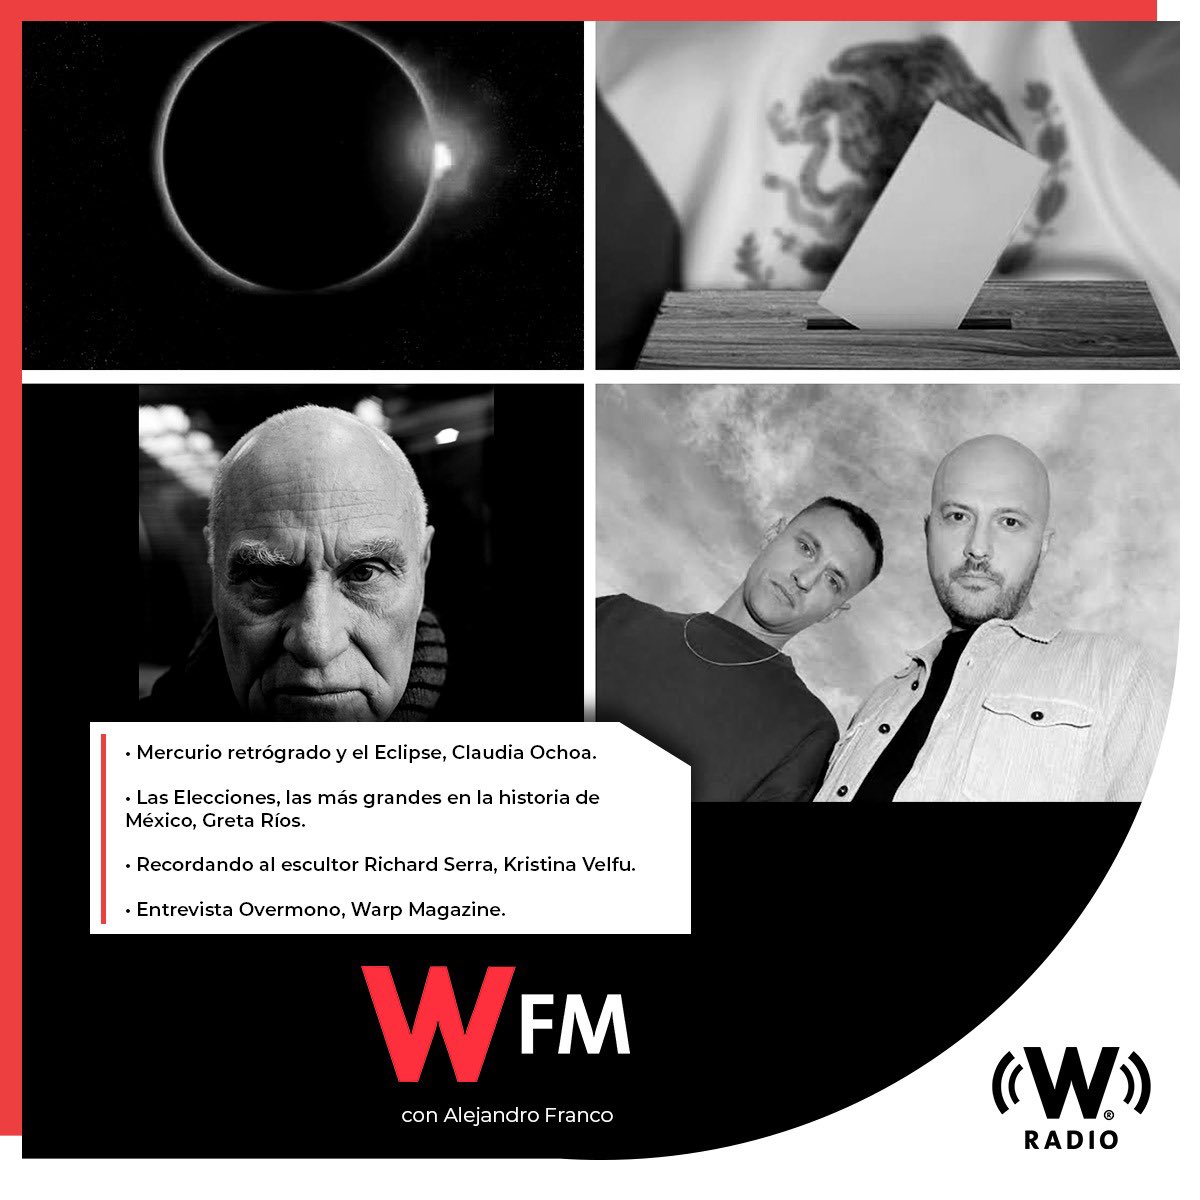 Este 1 de abril en #WFMWRadio:
- @mar_deestrellas habla sobre Mercurio Retrógrado y el próximo Eclipse.
- ⁠@gretadice detalla cómo las elecciones serán las más grandes en la historia de México.
- ⁠@Velfu recuerda al escultor Richard Serra.
- Entrevista @WARPmagazine a @OVERMONO